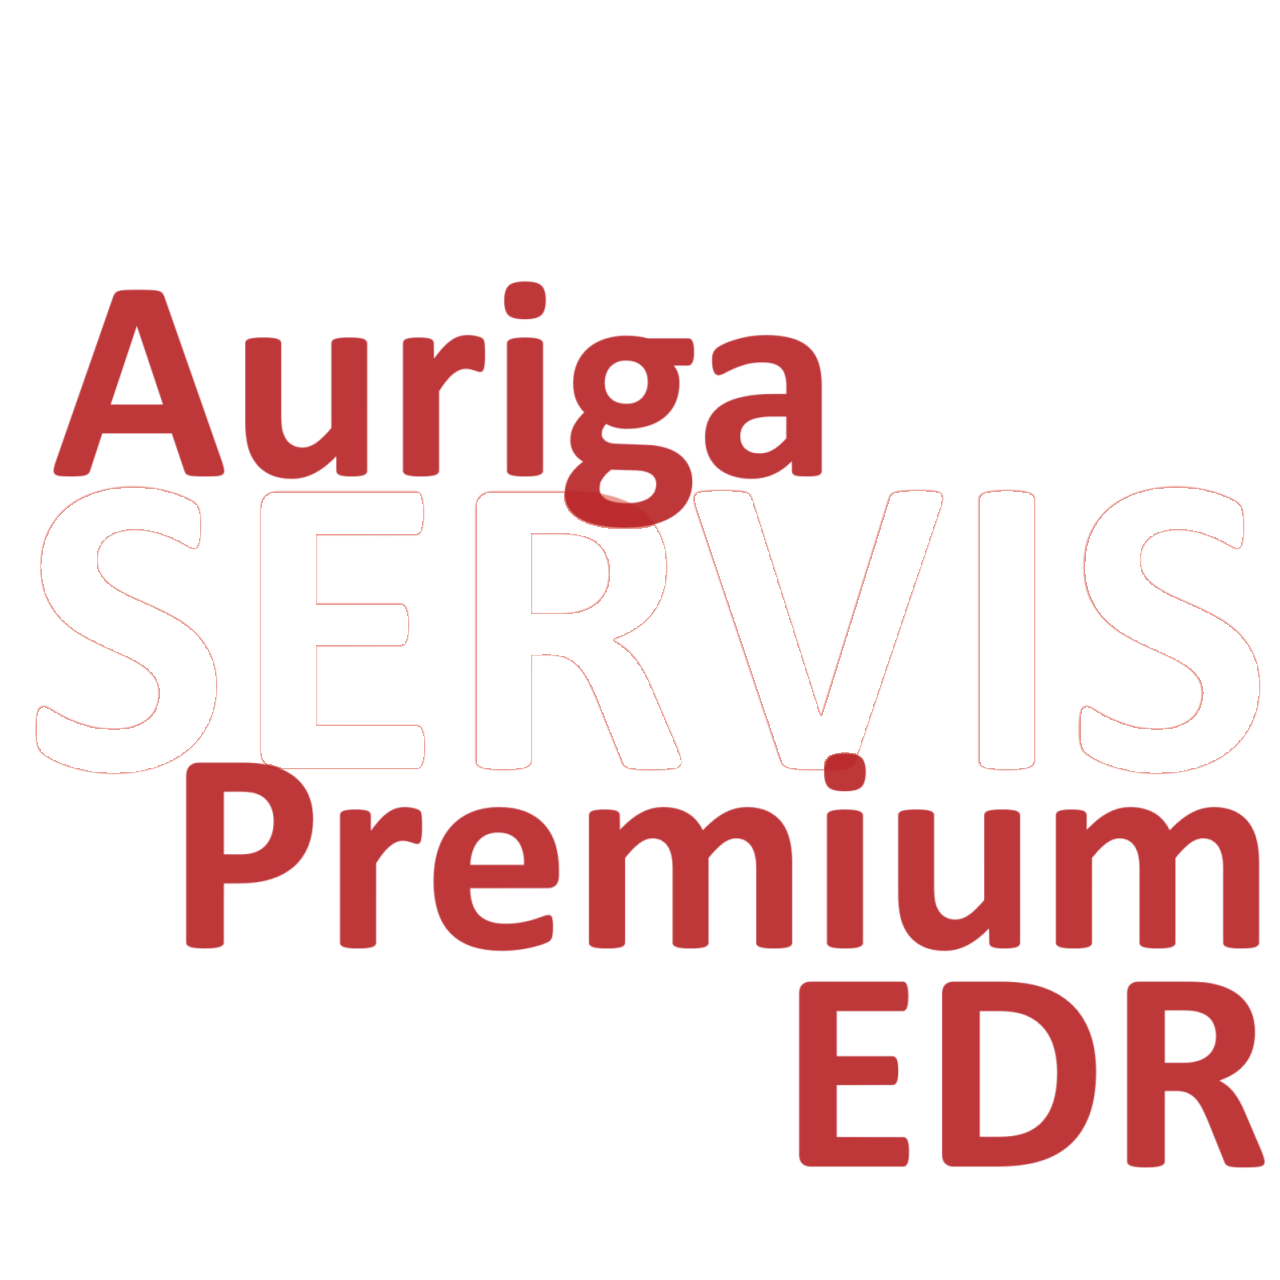 Auriga SERVIS Premium EDR